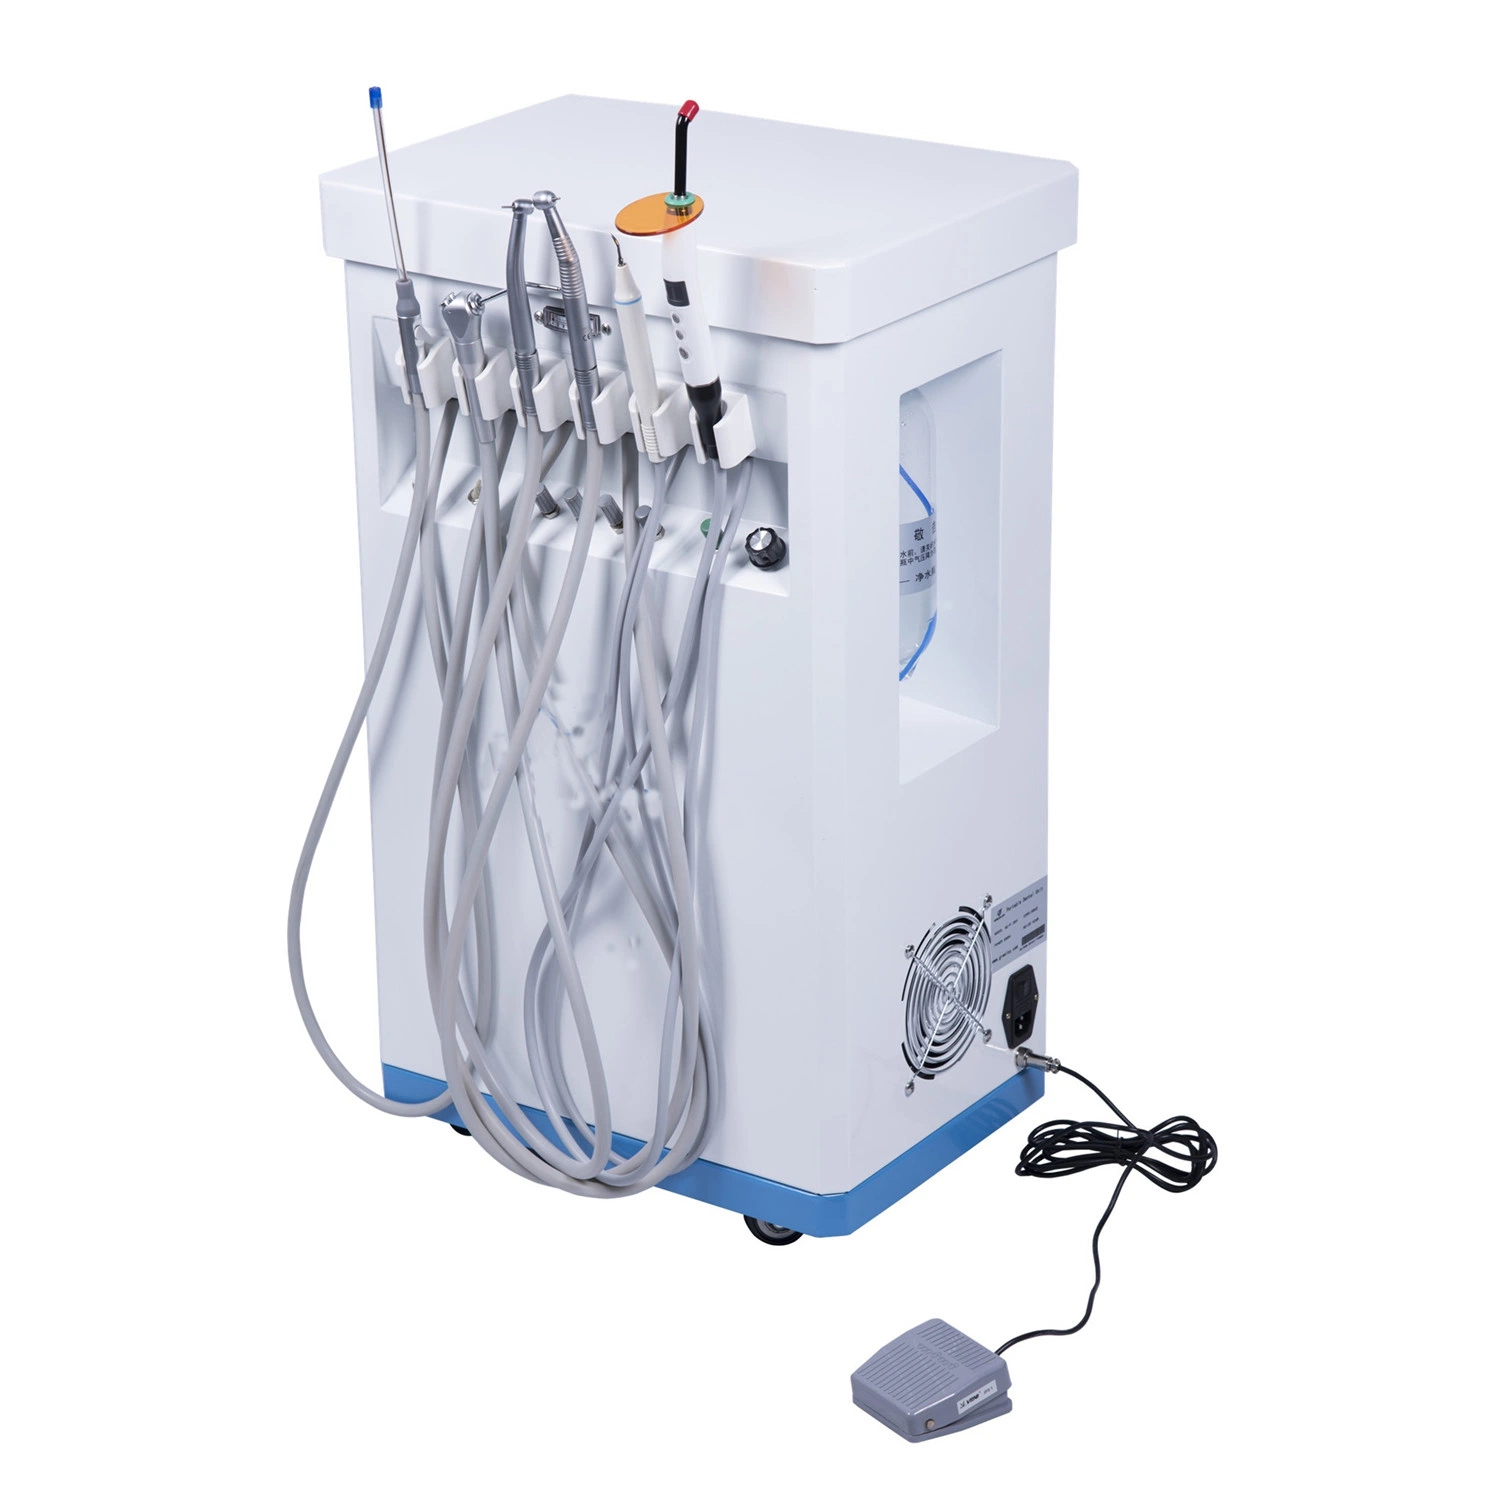 Горячие продажи Стоматологическое оборудование LED свет Стоматологический Лечение стул Стоматология Машина